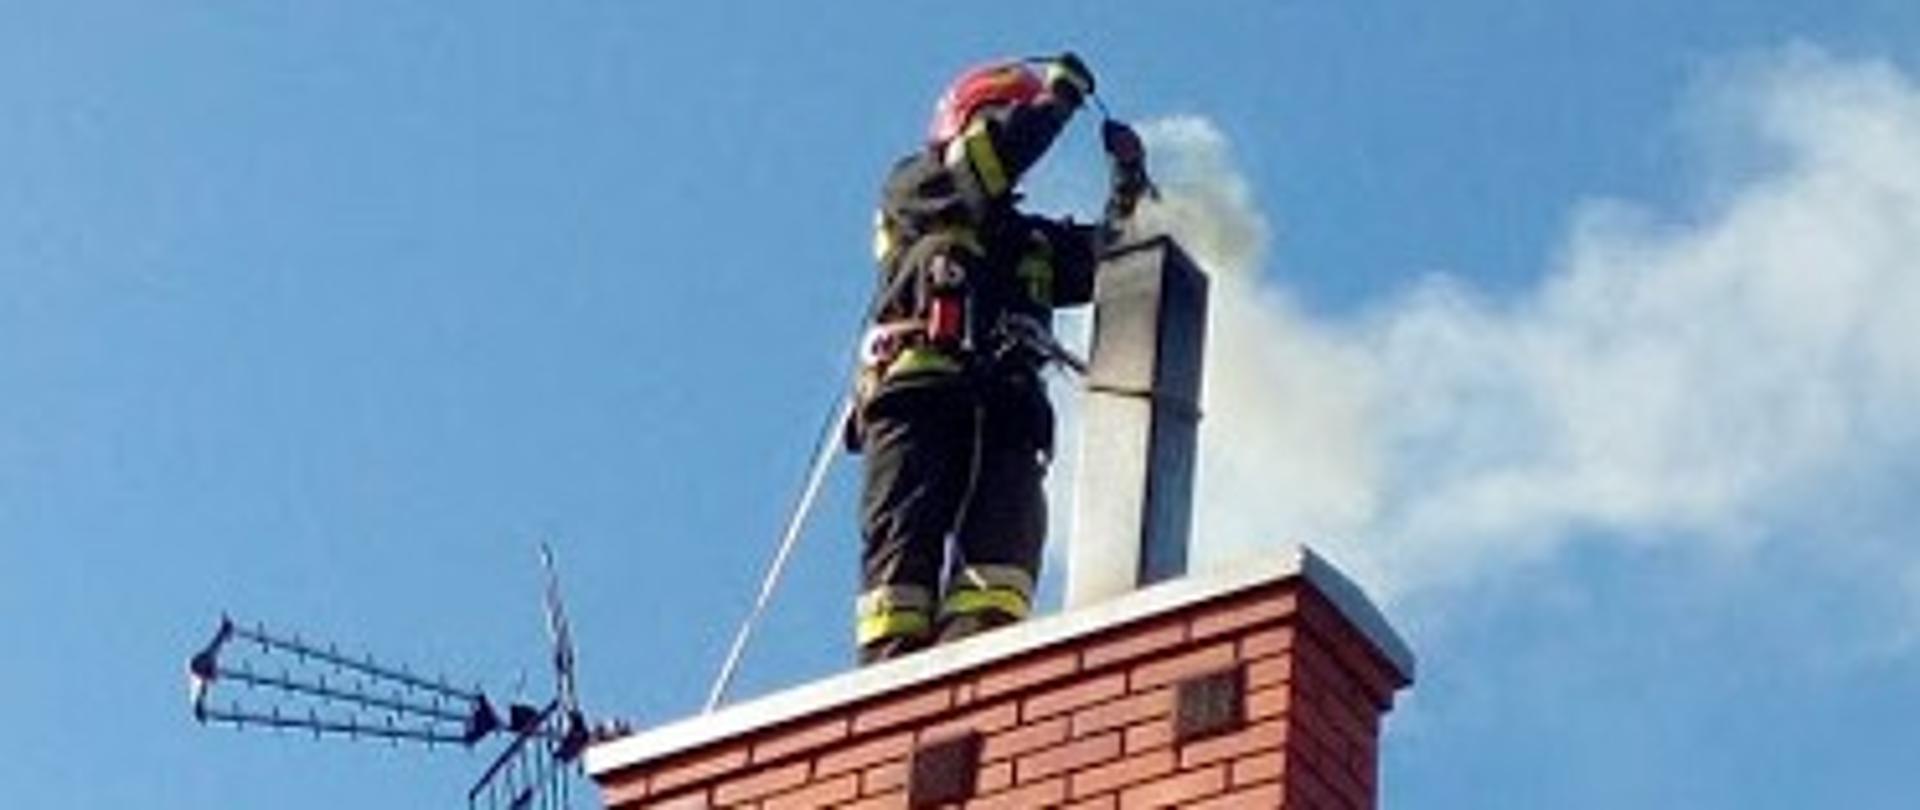 Zdjęcie przedstawia strażaka stojącego na kominie, który gasi pożar sadzy. W tle błękitne niebo.